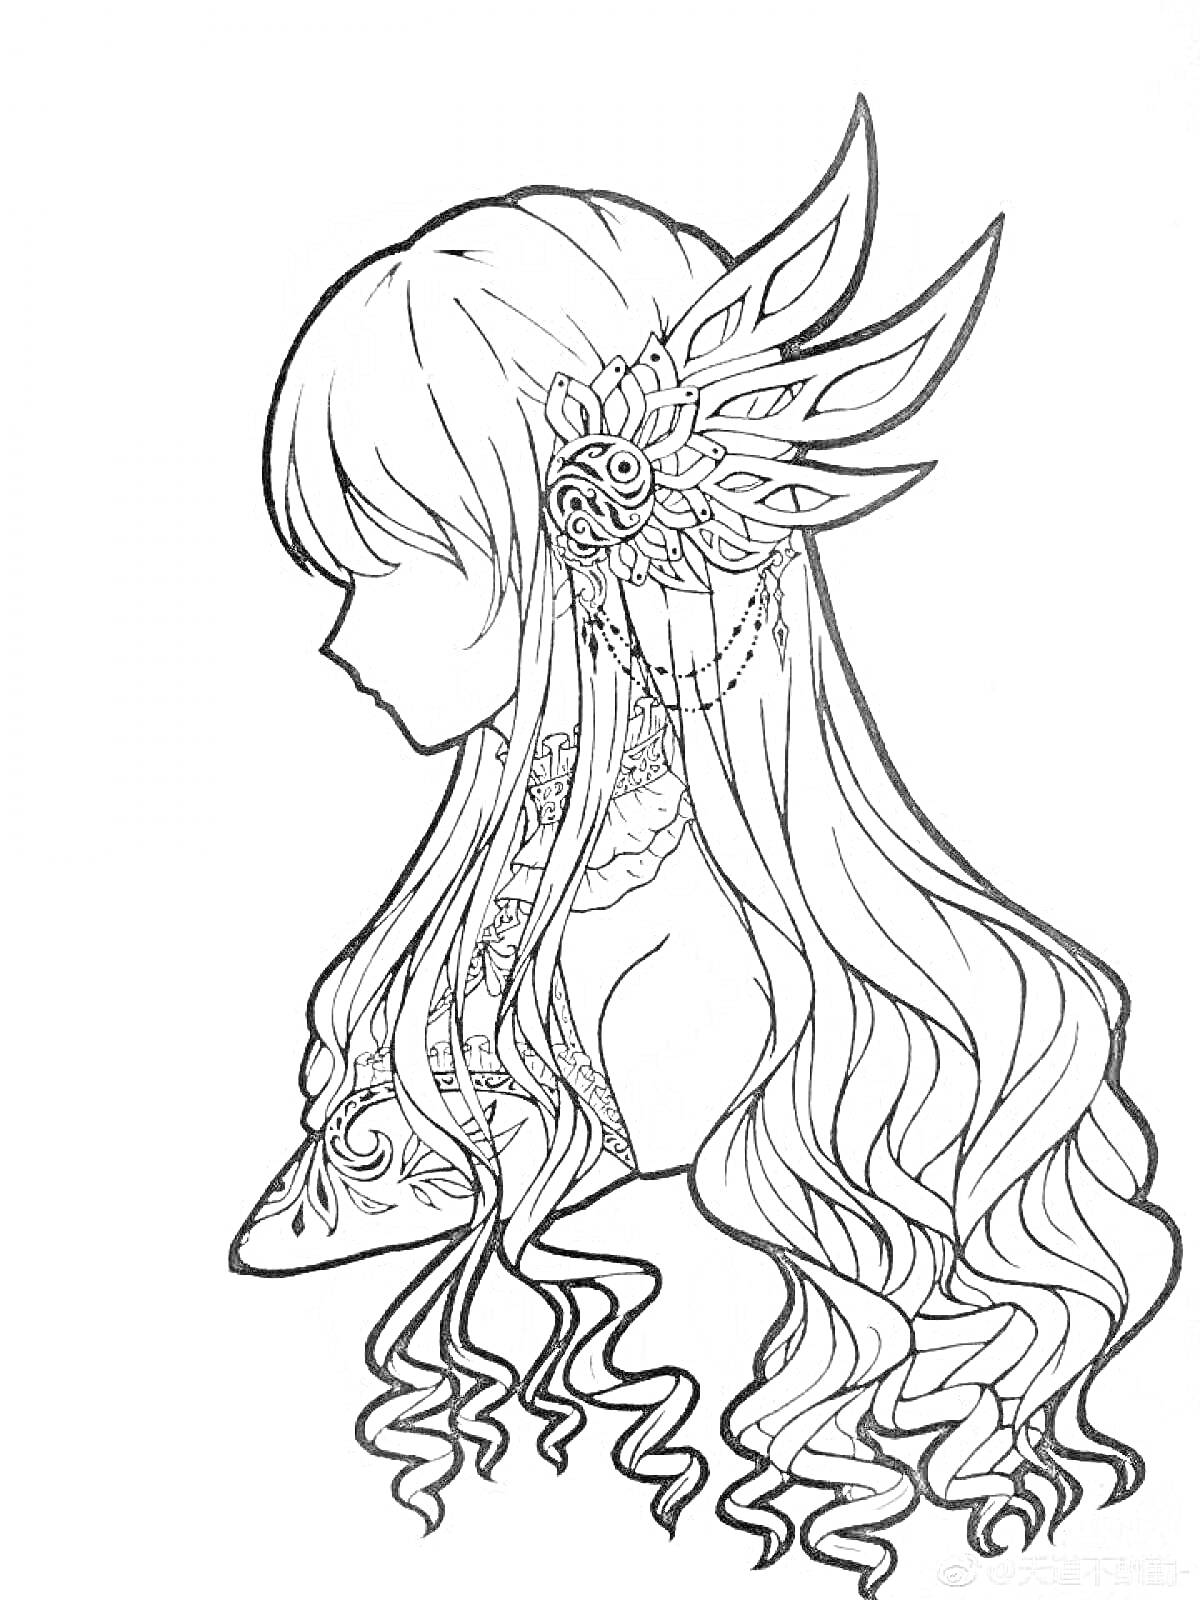 Раскраска Профиль аниме девушки с длинными волосами, украшенными цветком и декоративными элементами